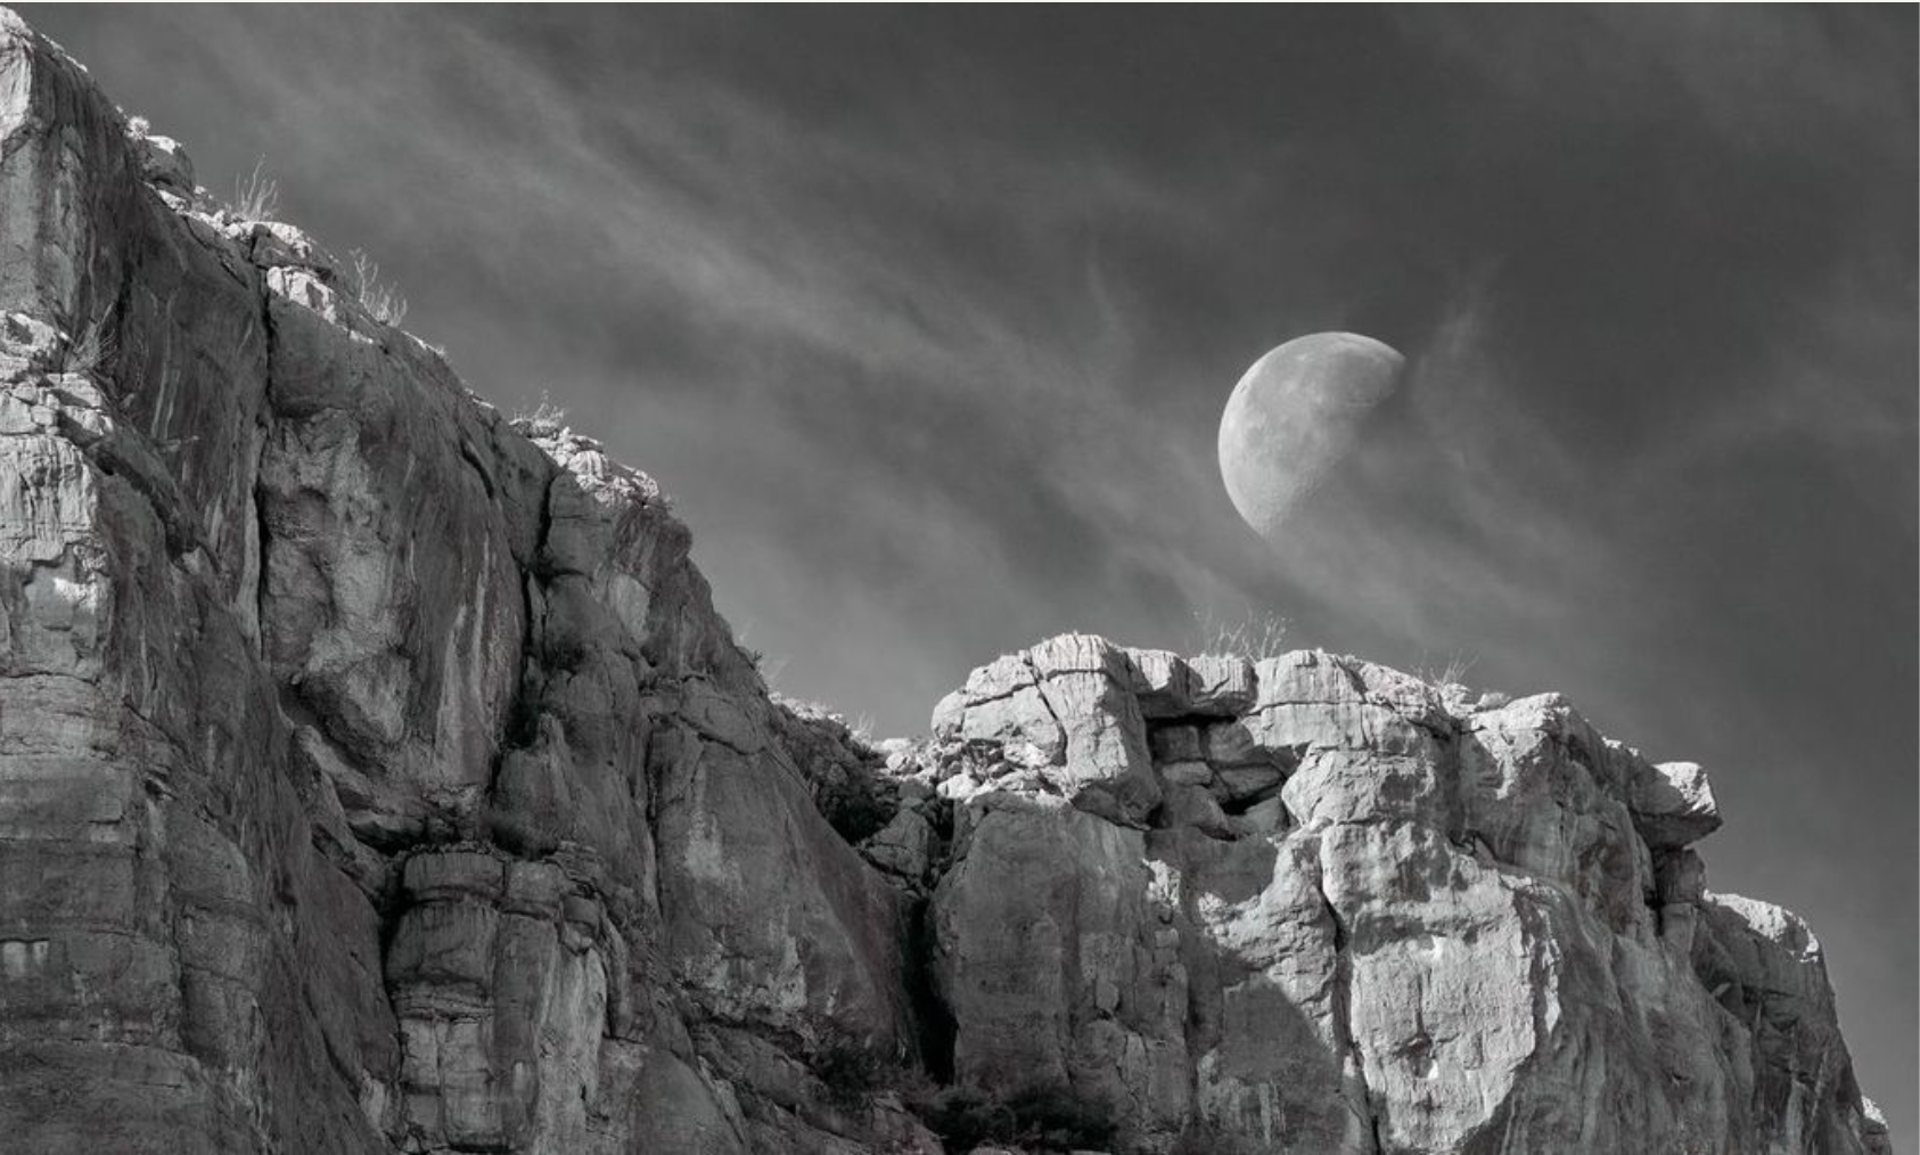 Moonset Over Santa Elena - Framed by Tim Herschbach